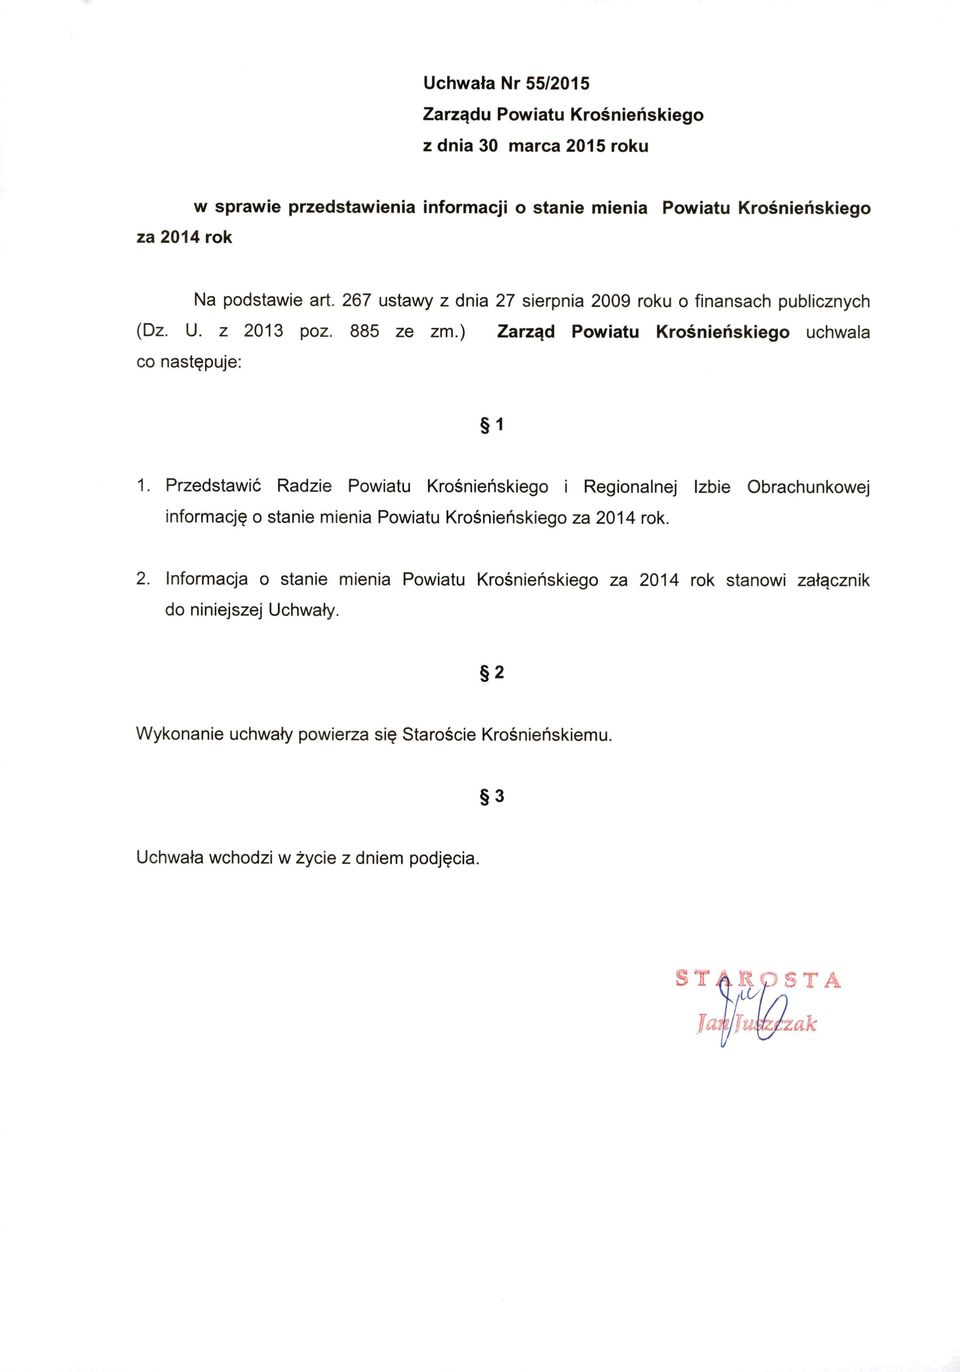 Przedstawić Radzie Powiatu Krośnieńskiego i Regionalnej Izbie Obrachunkowej i nformację o stanie mienia Powiatu Krośnieńskiego za 20